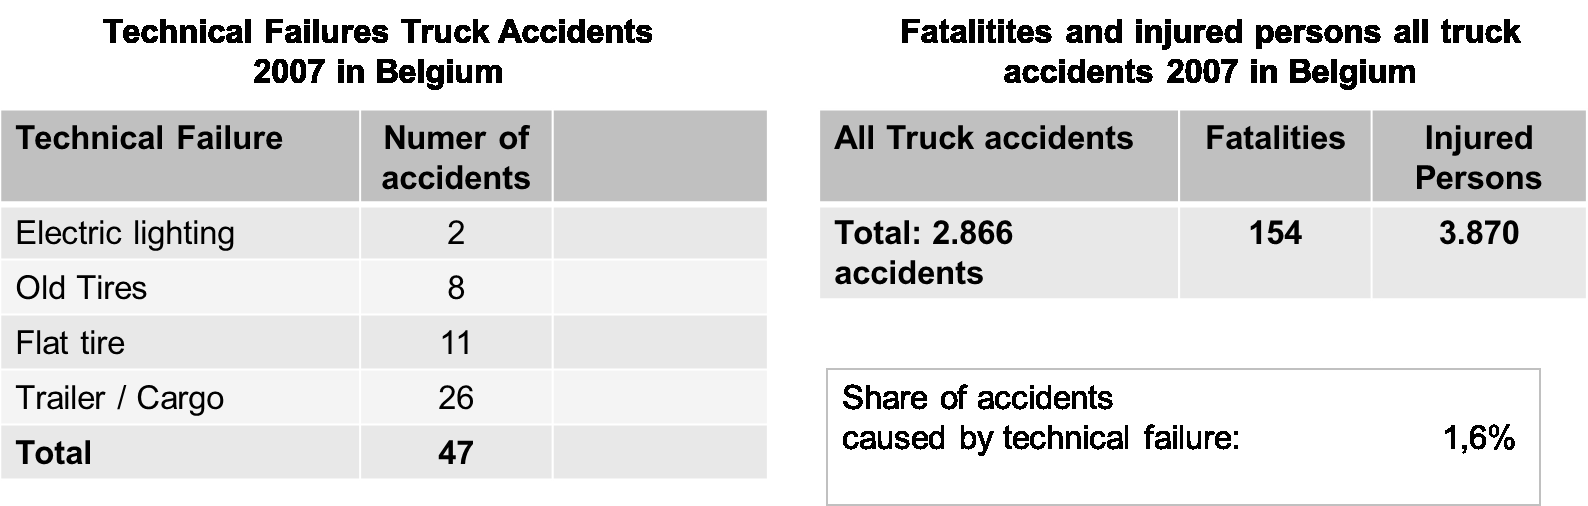 Personen zu finden. Bei einer gesamten Anzahl an Straßengüterverkehrsunfällen in Belgien in Höhe von 2.866 stellt die Unfallursache technischer Fahrzeugmangel einen Anteil von 1,6 % dar (vgl.